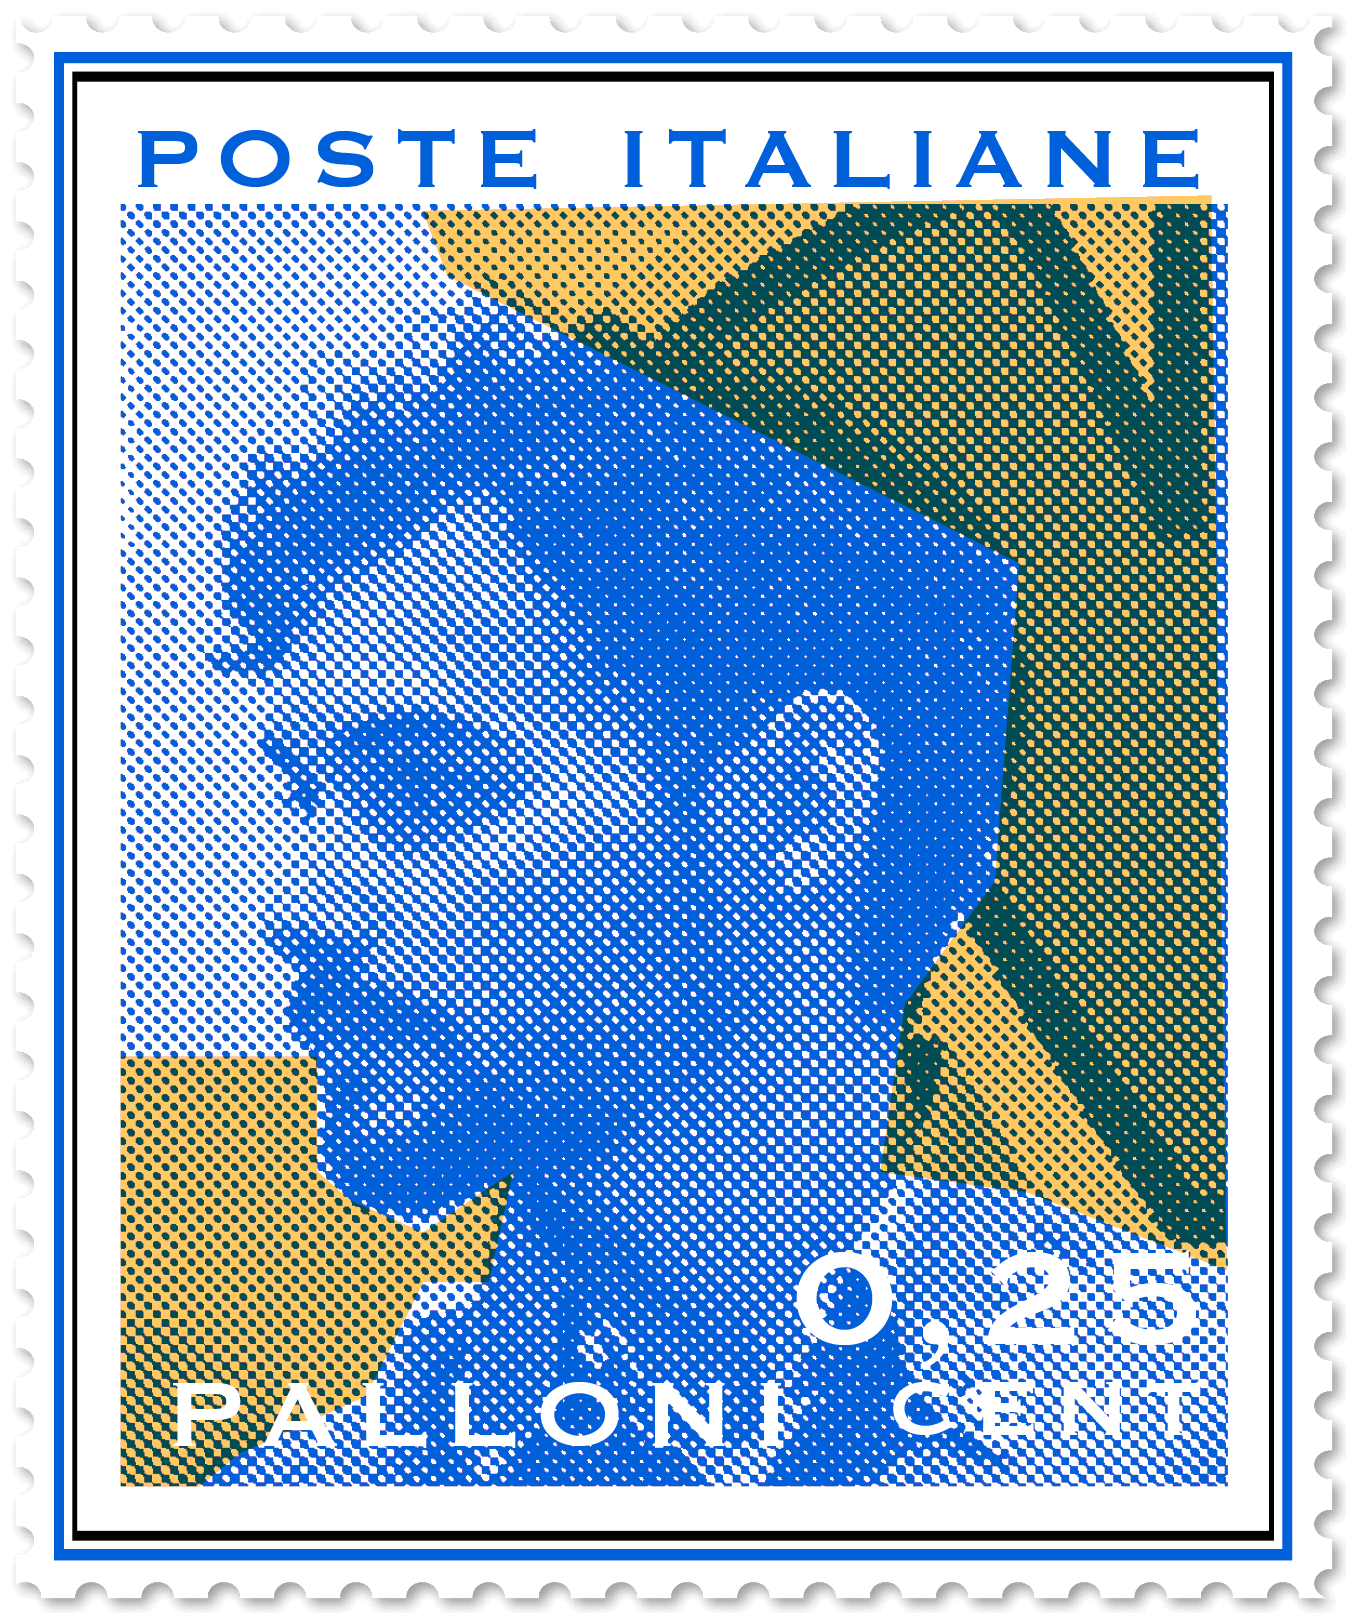 Lorenzo Palloni